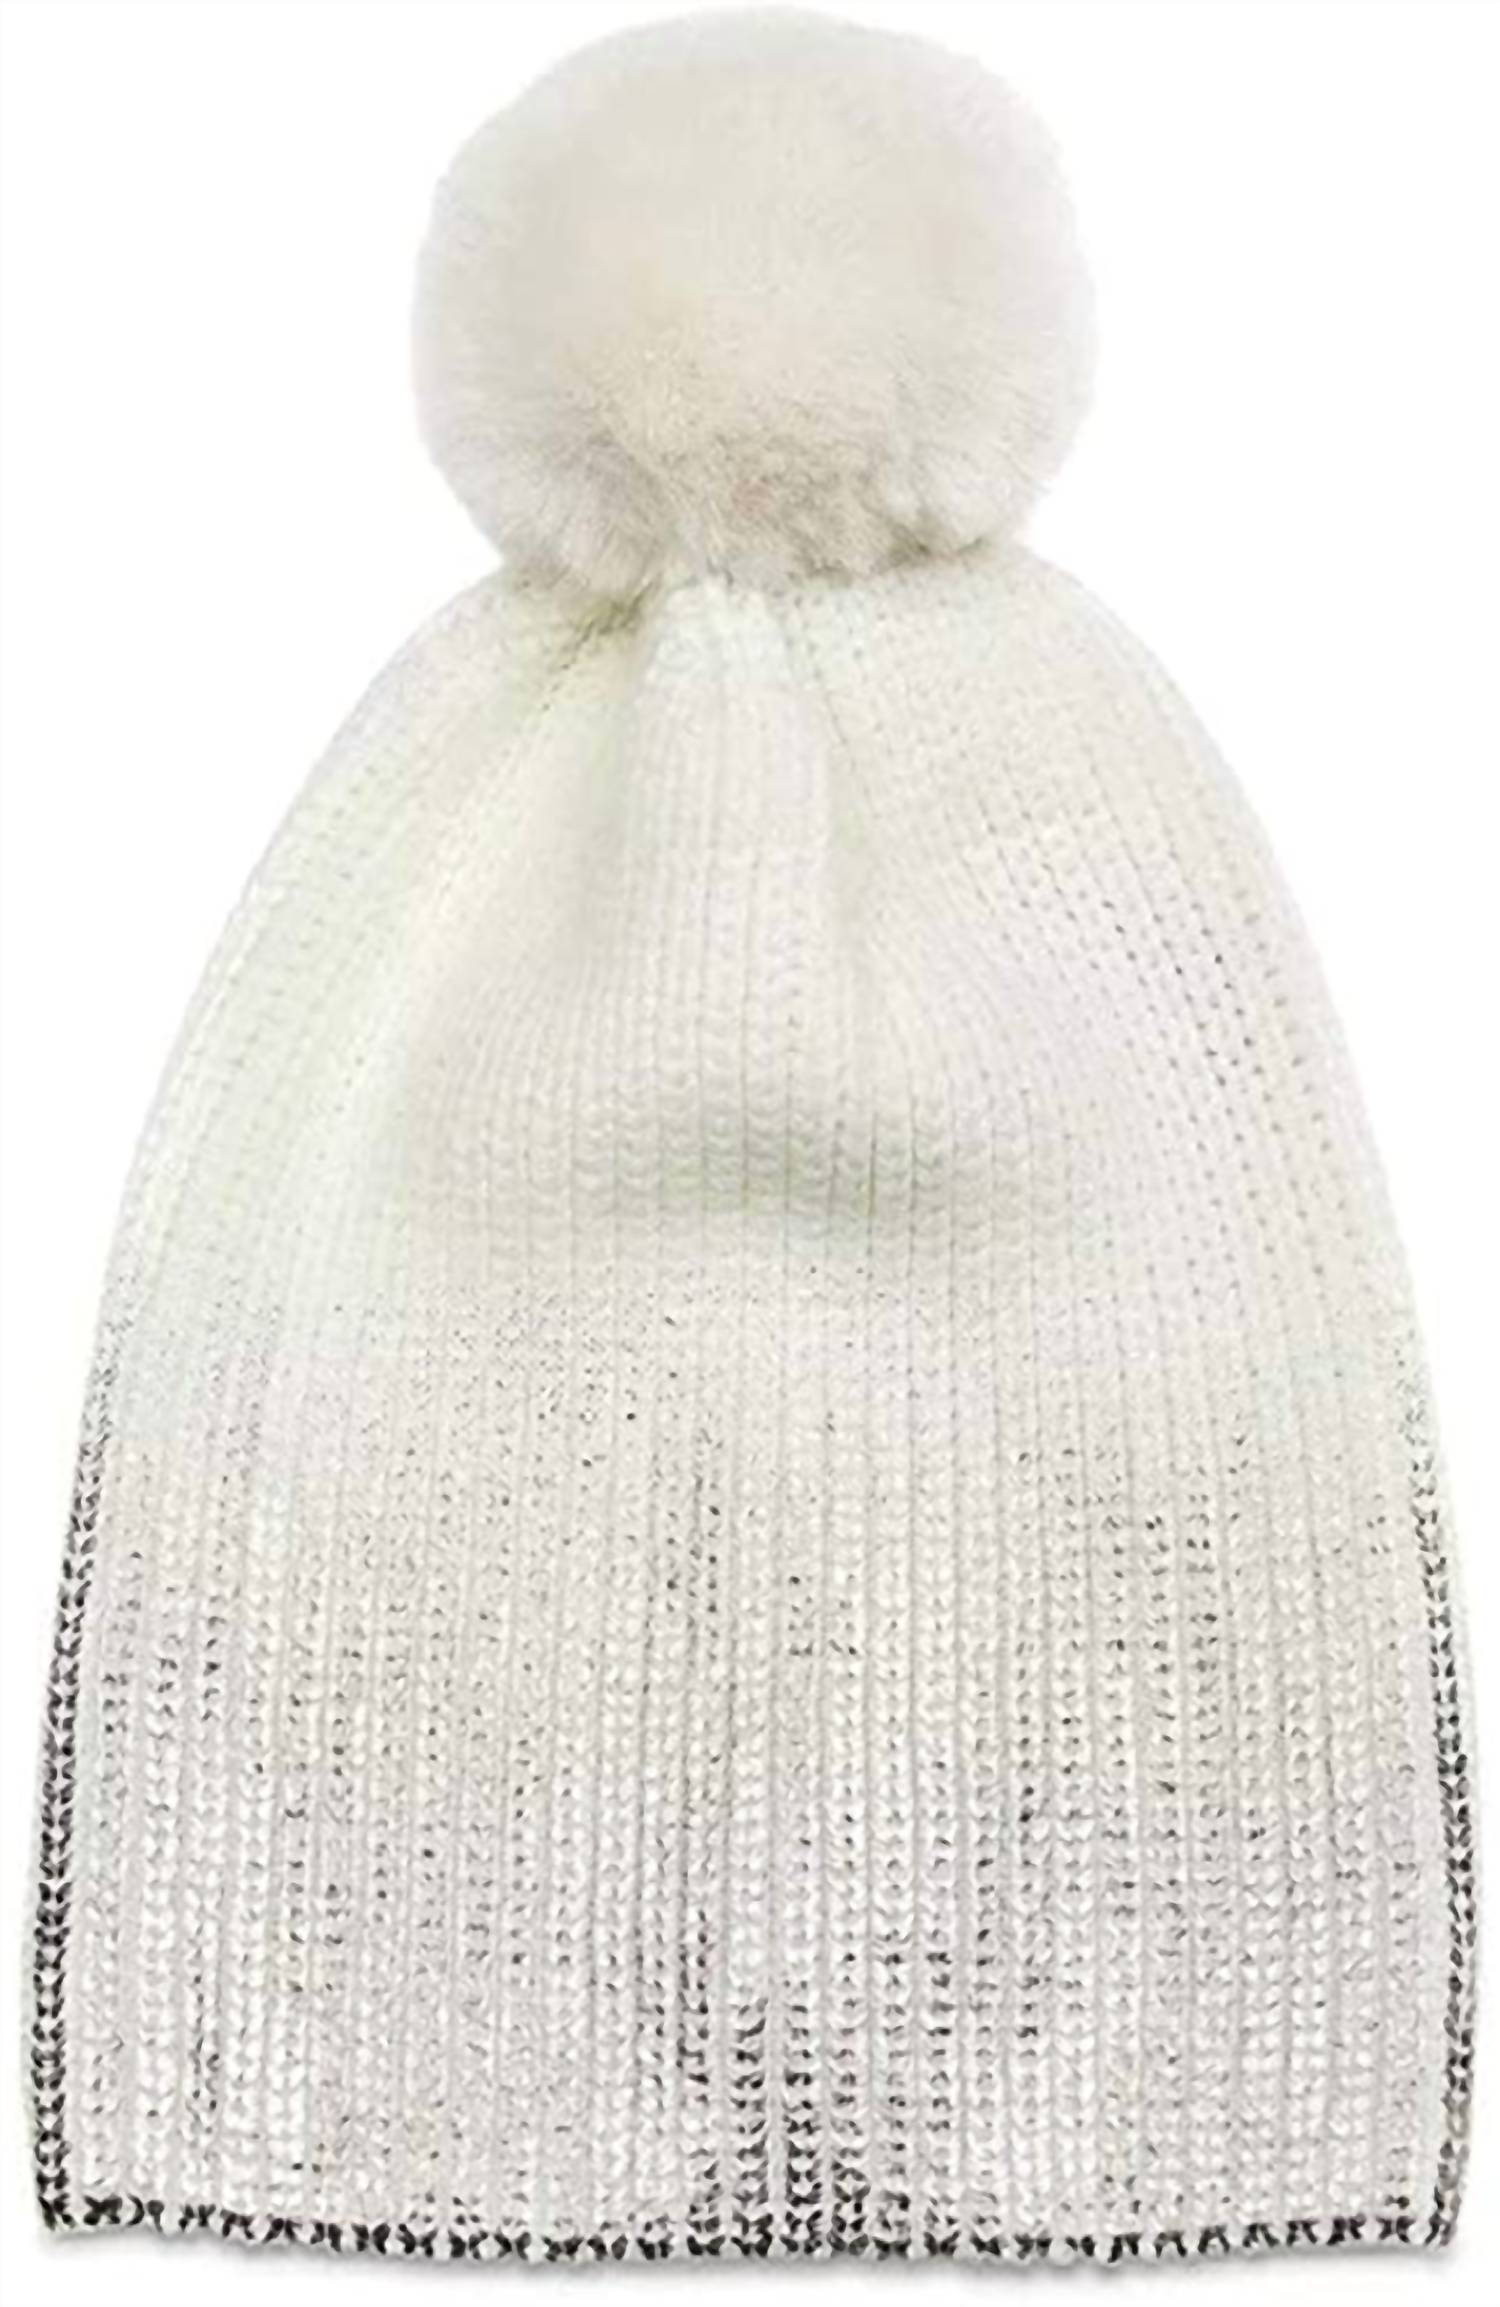 Jocelyn Metallic Pom Pom Knit Hat Beanie In Ivory Silver In White